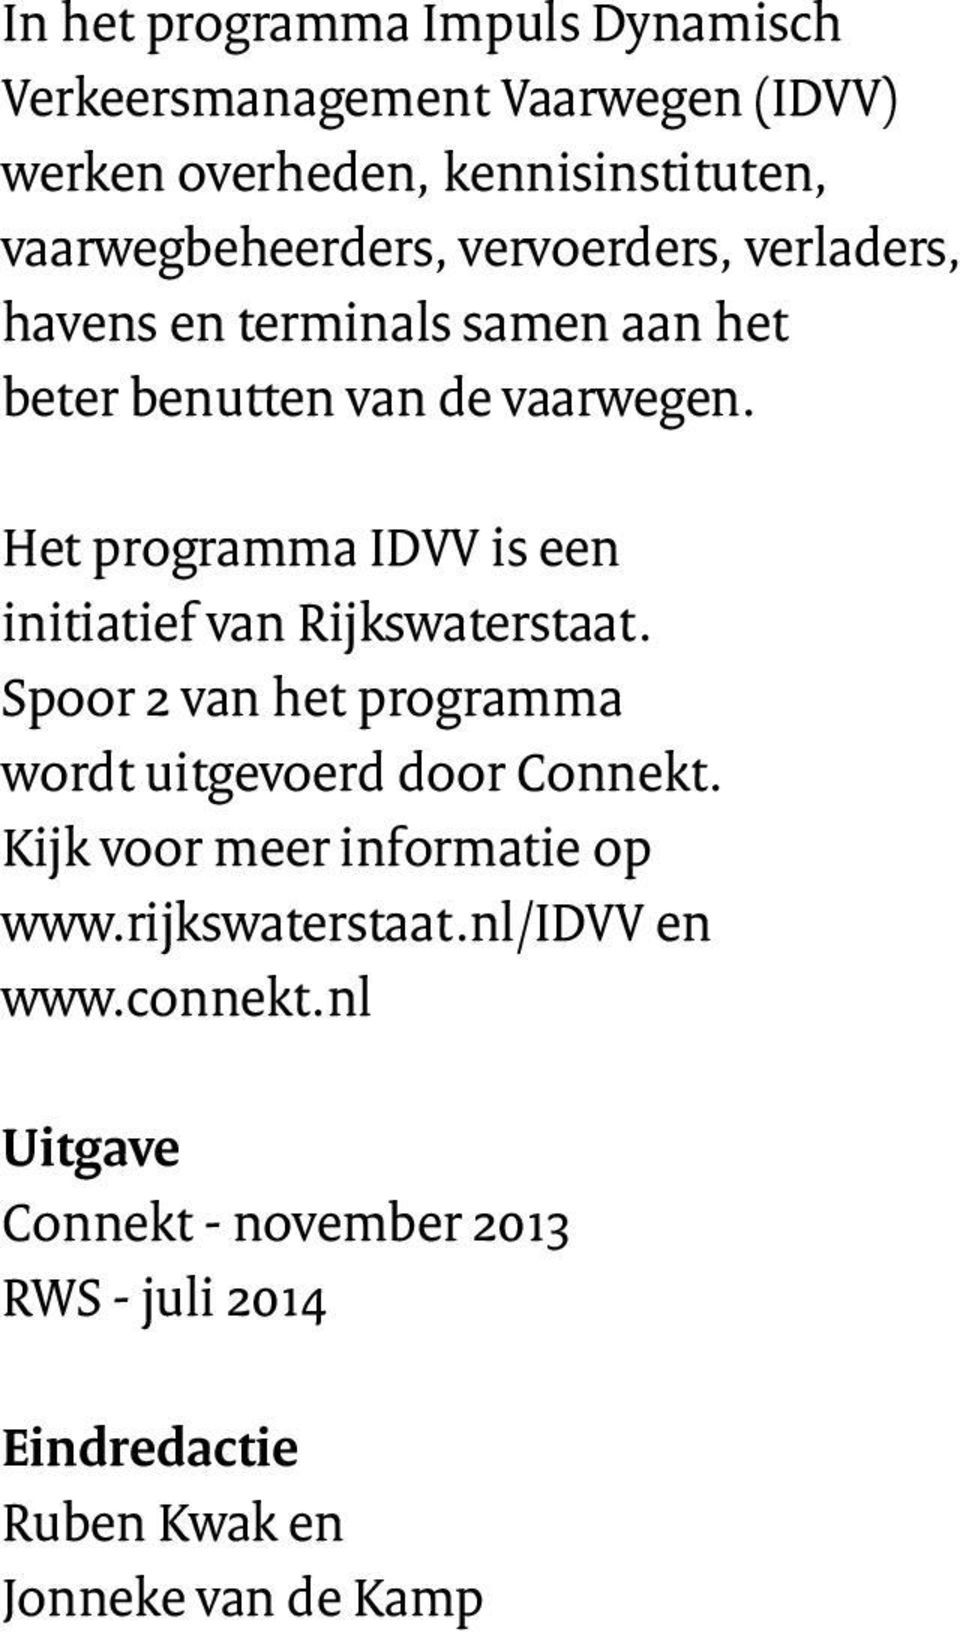 Het programma IDVV is een initiatief van Rijkswaterstaat. Spoor 2 van het programma wordt uitgevoerd door Connekt.